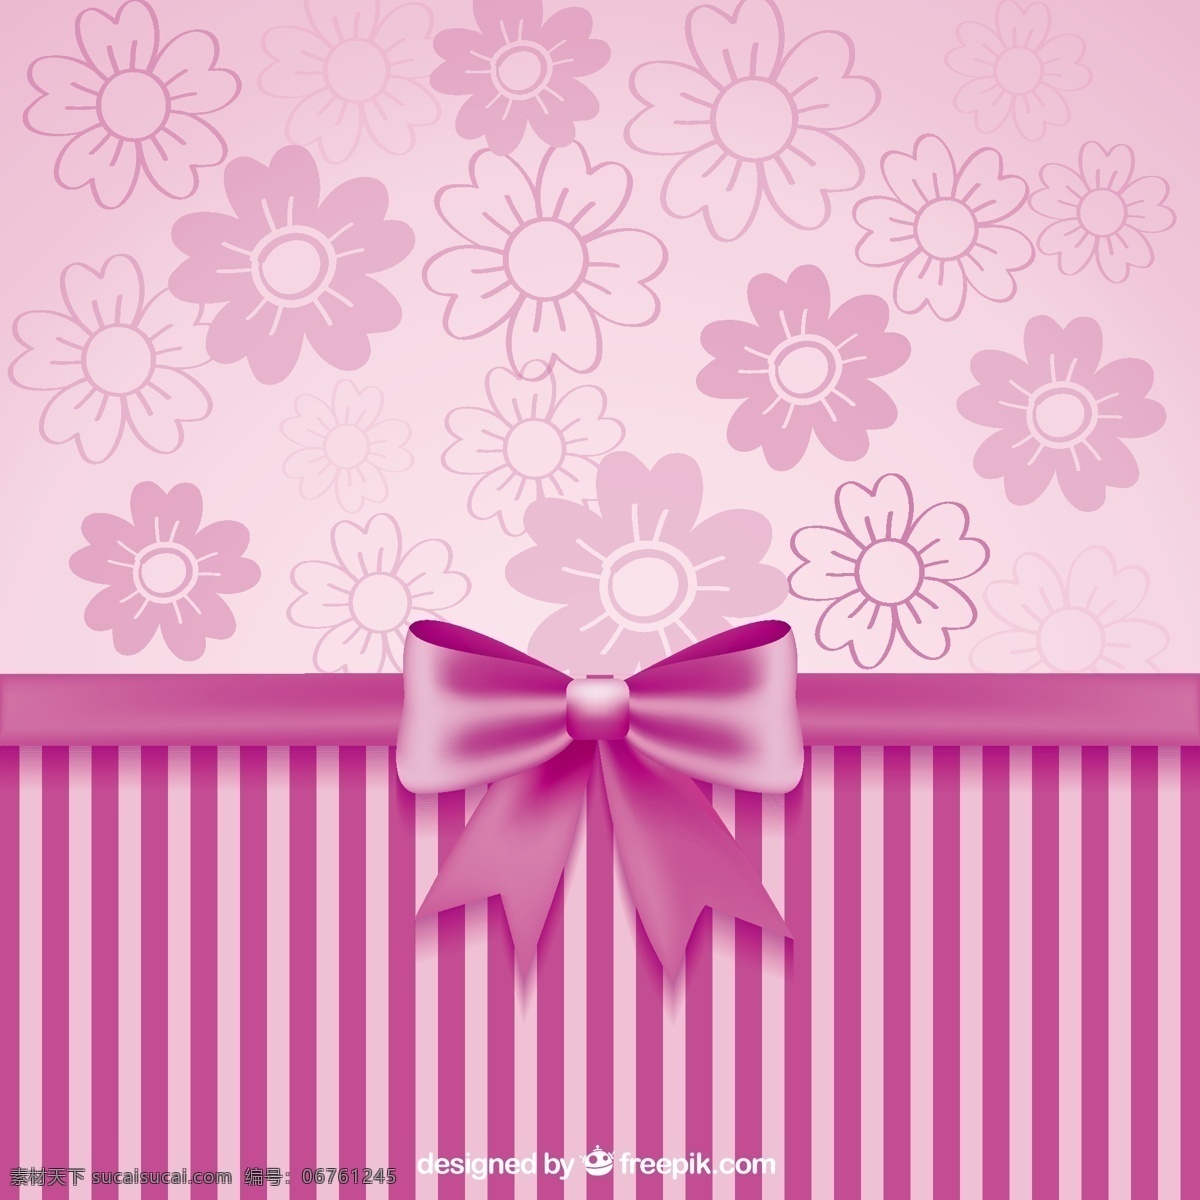 粉红 丝带 装饰 壁纸 背景 粉红色 墙纸 墙壁 粉红色背景 粉红丝带 紫色